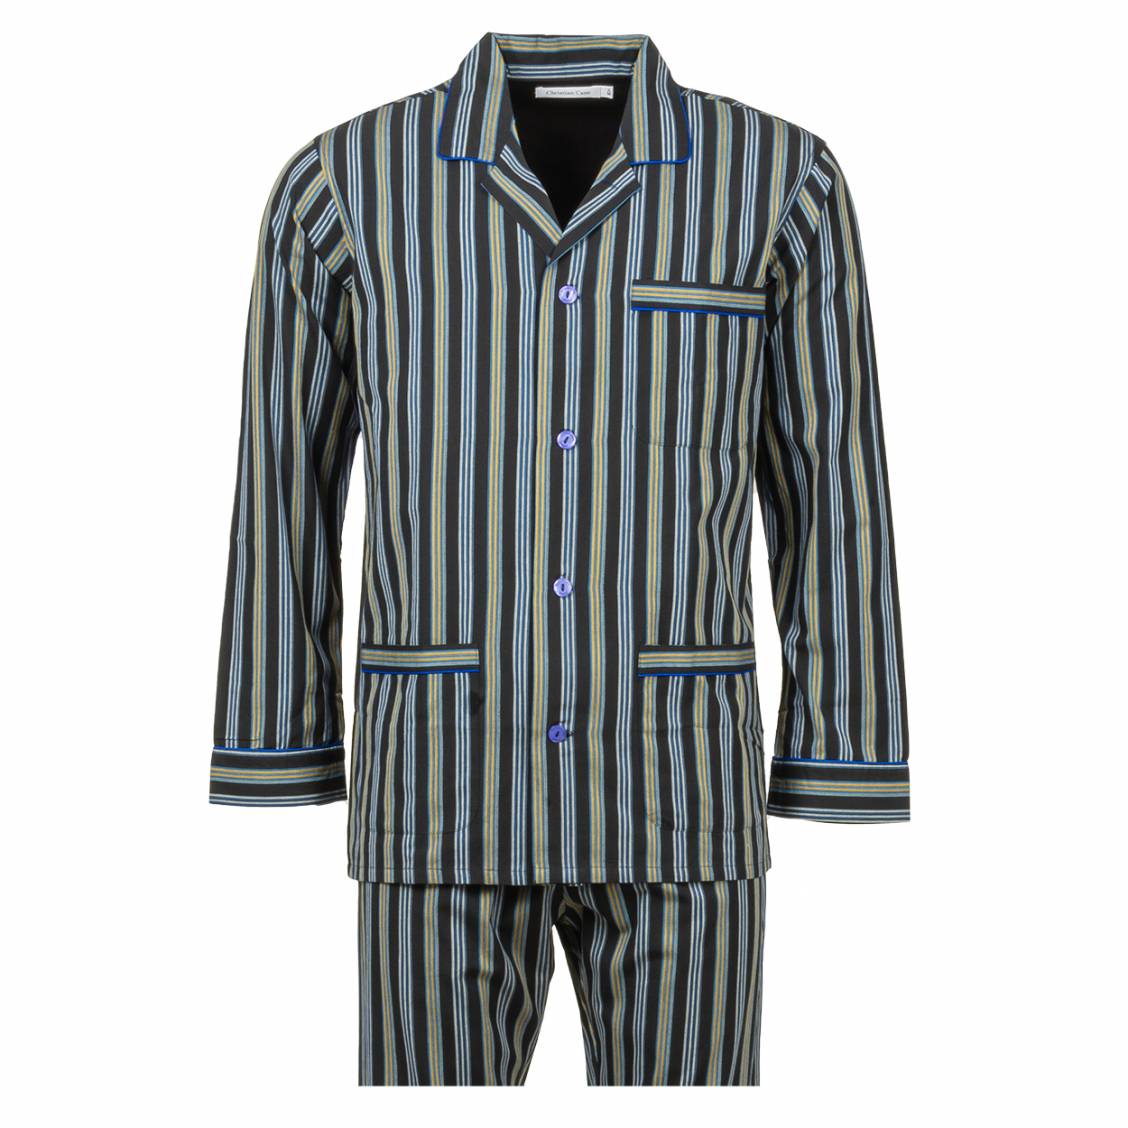 Pyjama long col chemise Christian Cane Barri en coton noir à rayures  verticales bleu marine, blanches et jaunes